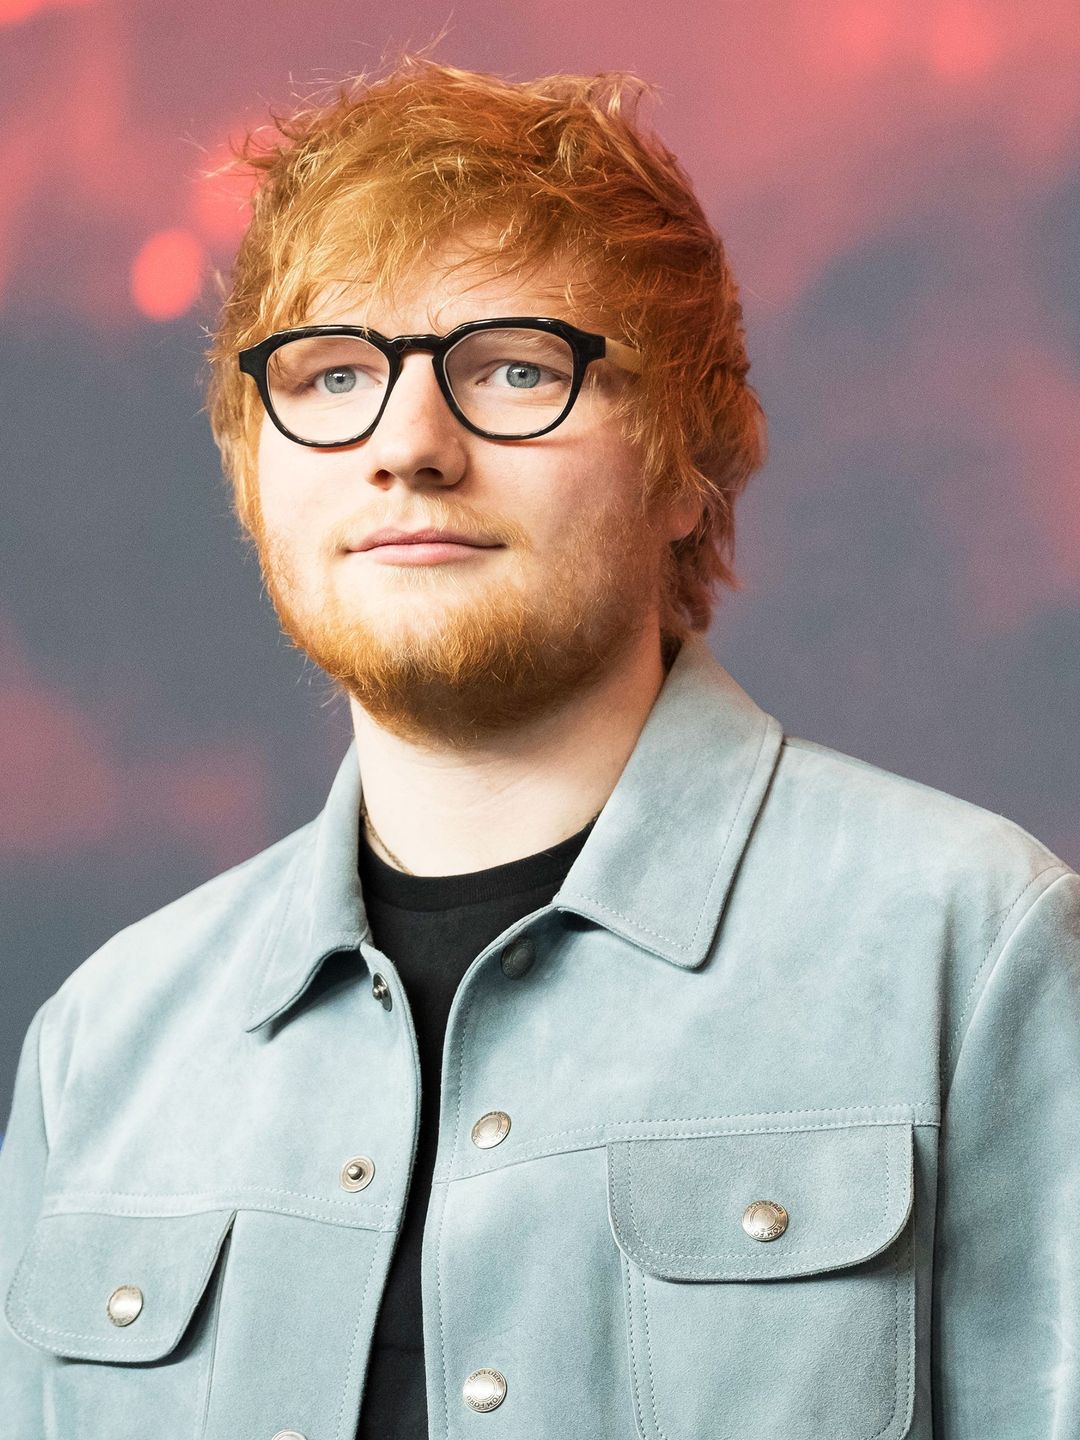 Ed Sheeran early career